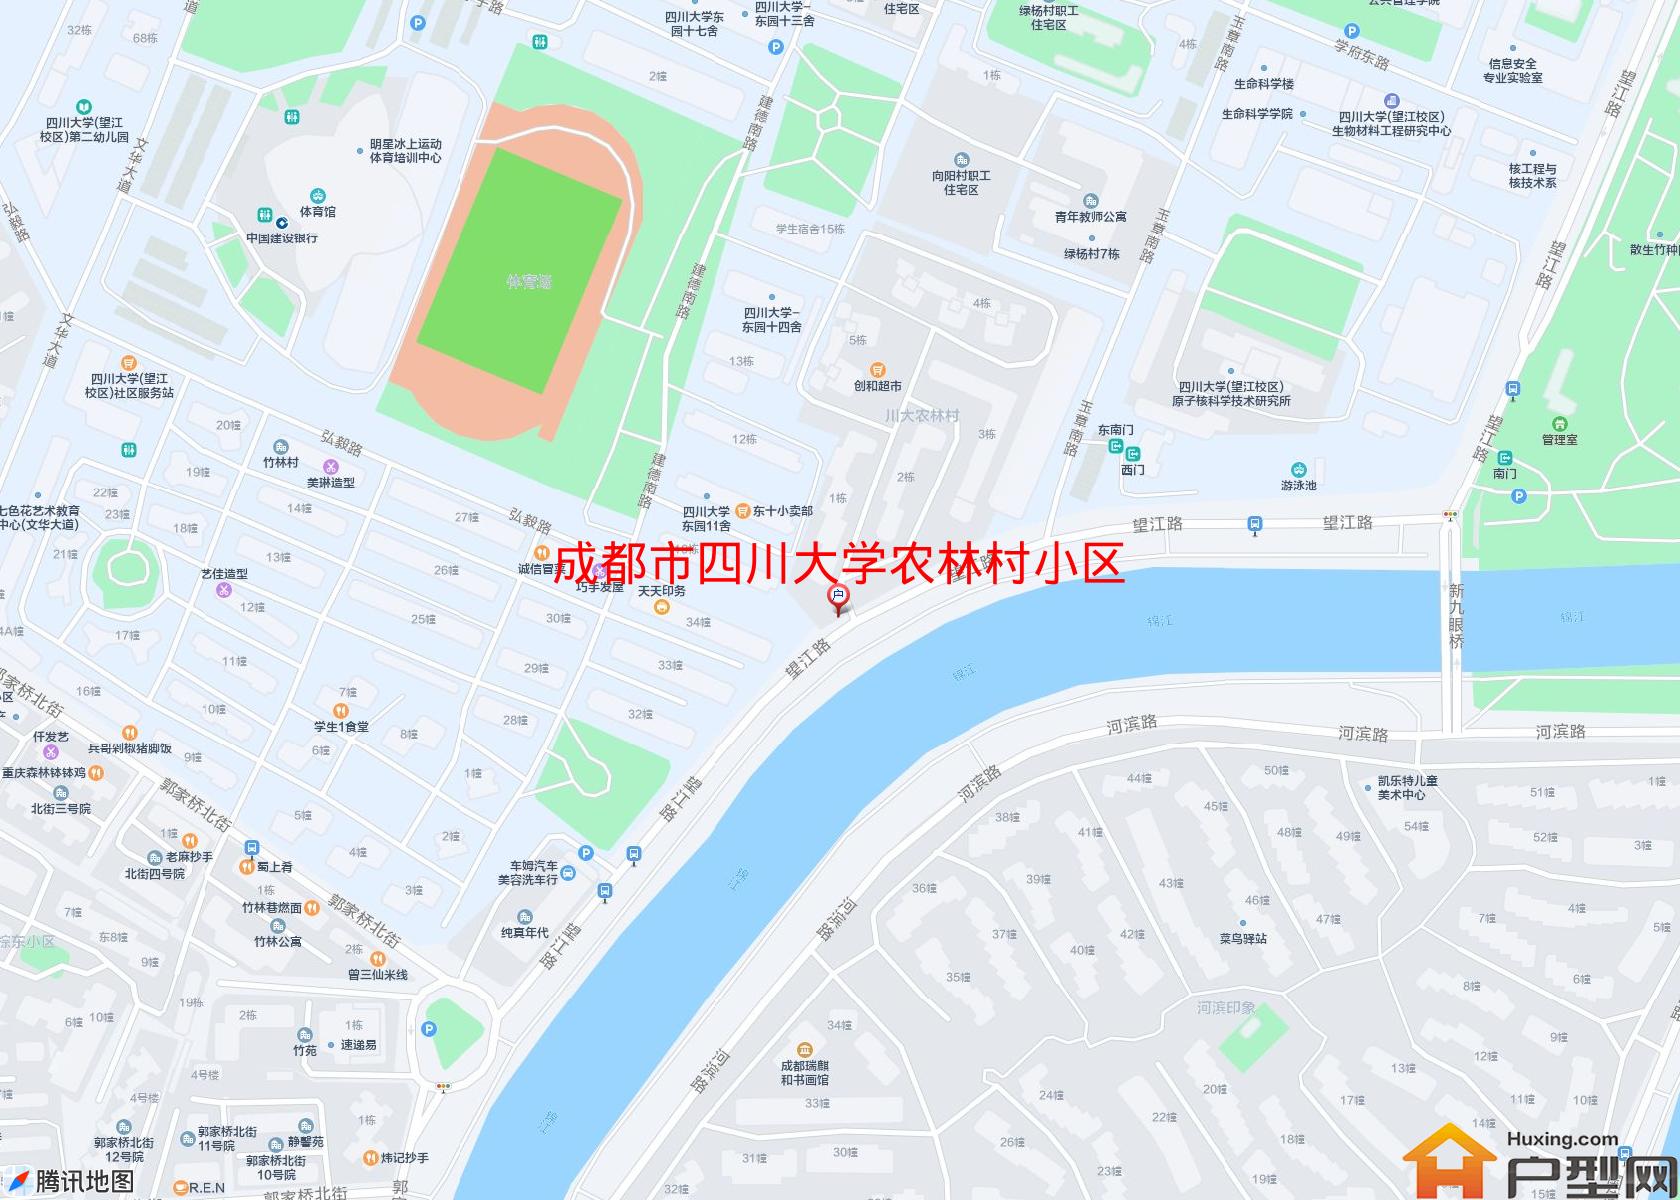 四川大学农林村小区小区 - 户型网